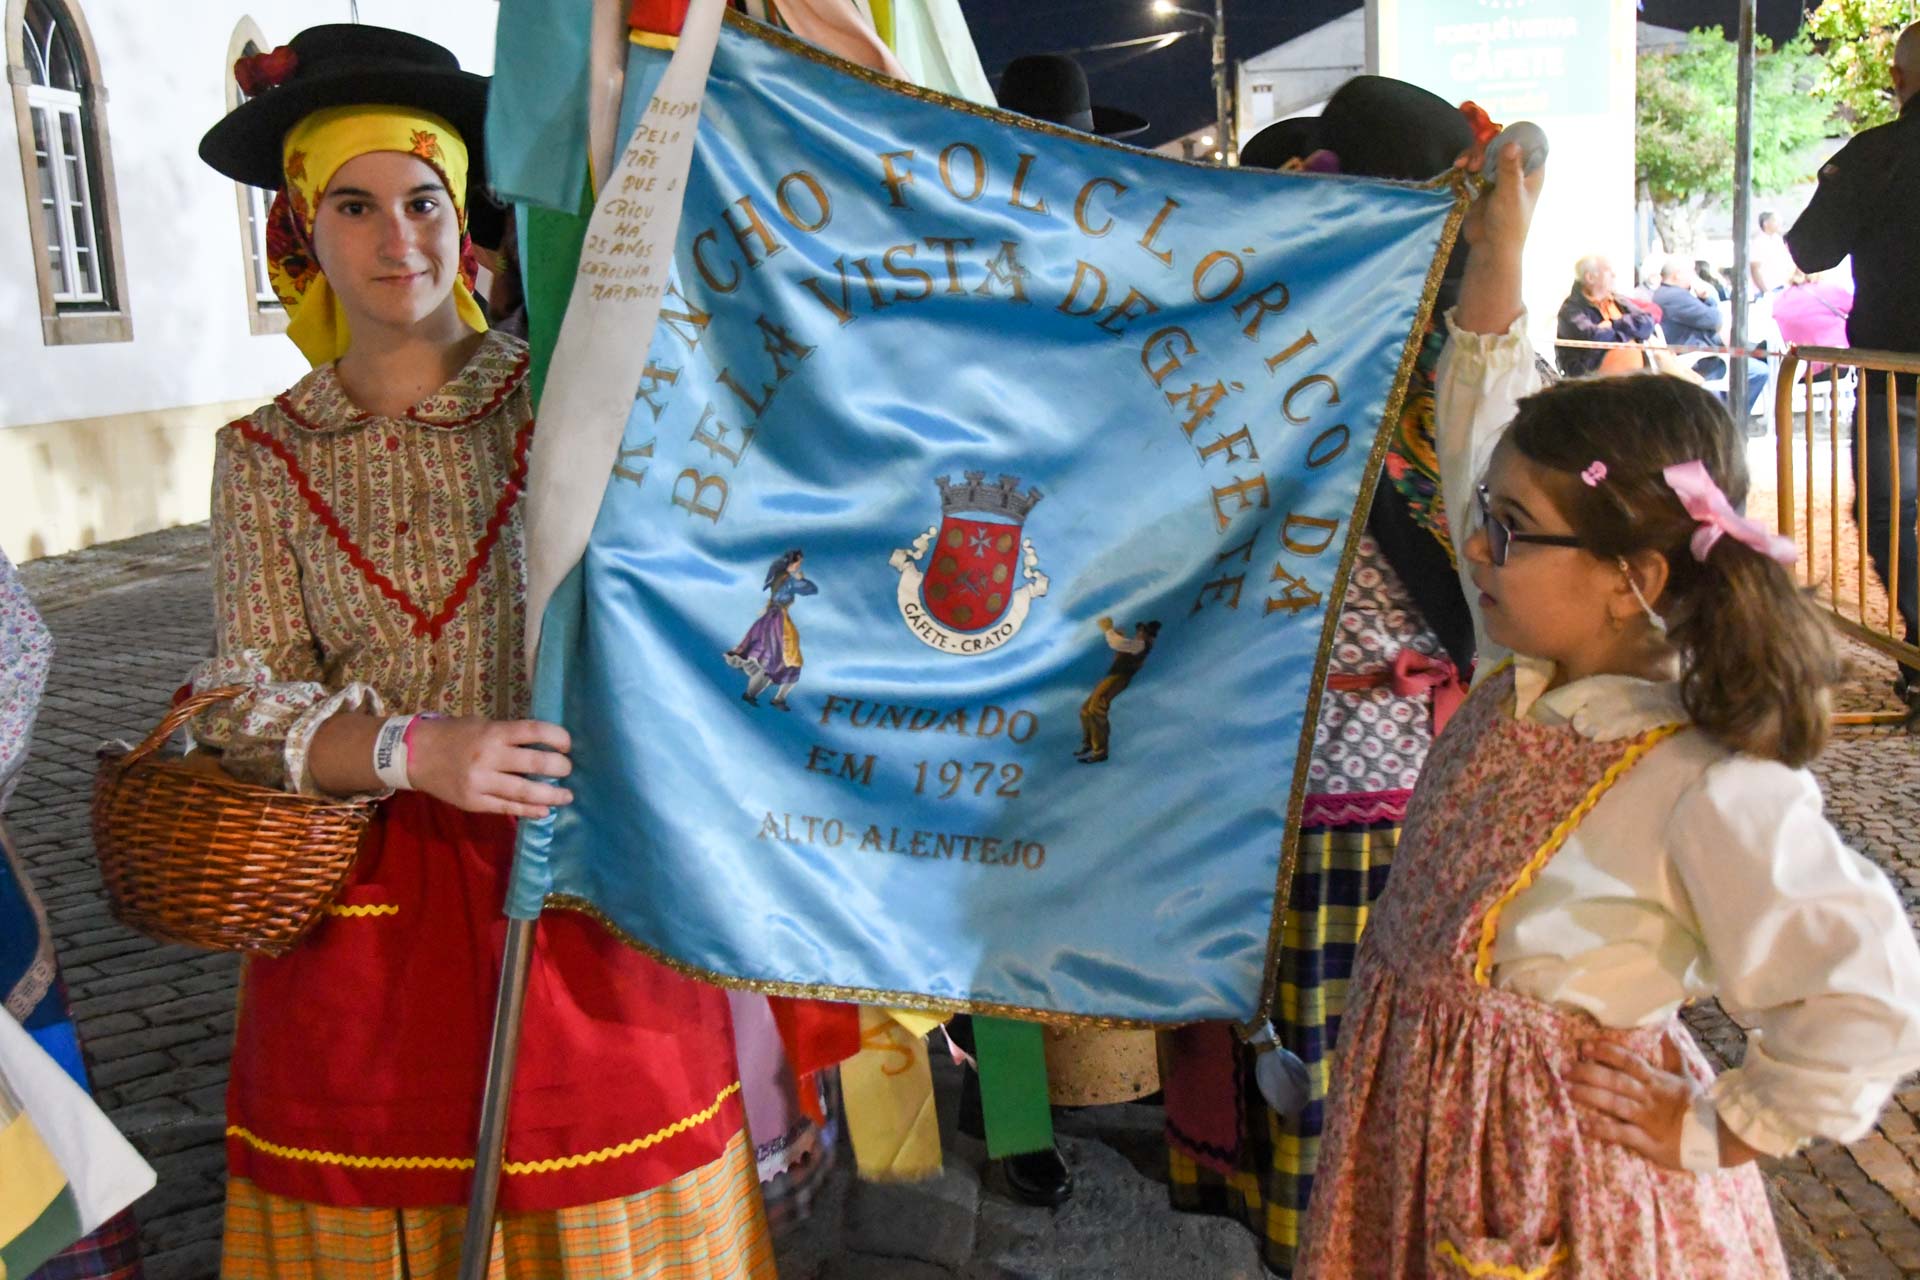 VIII Festival de Folclore trouxe cultura e tradição à vila de Gáfete